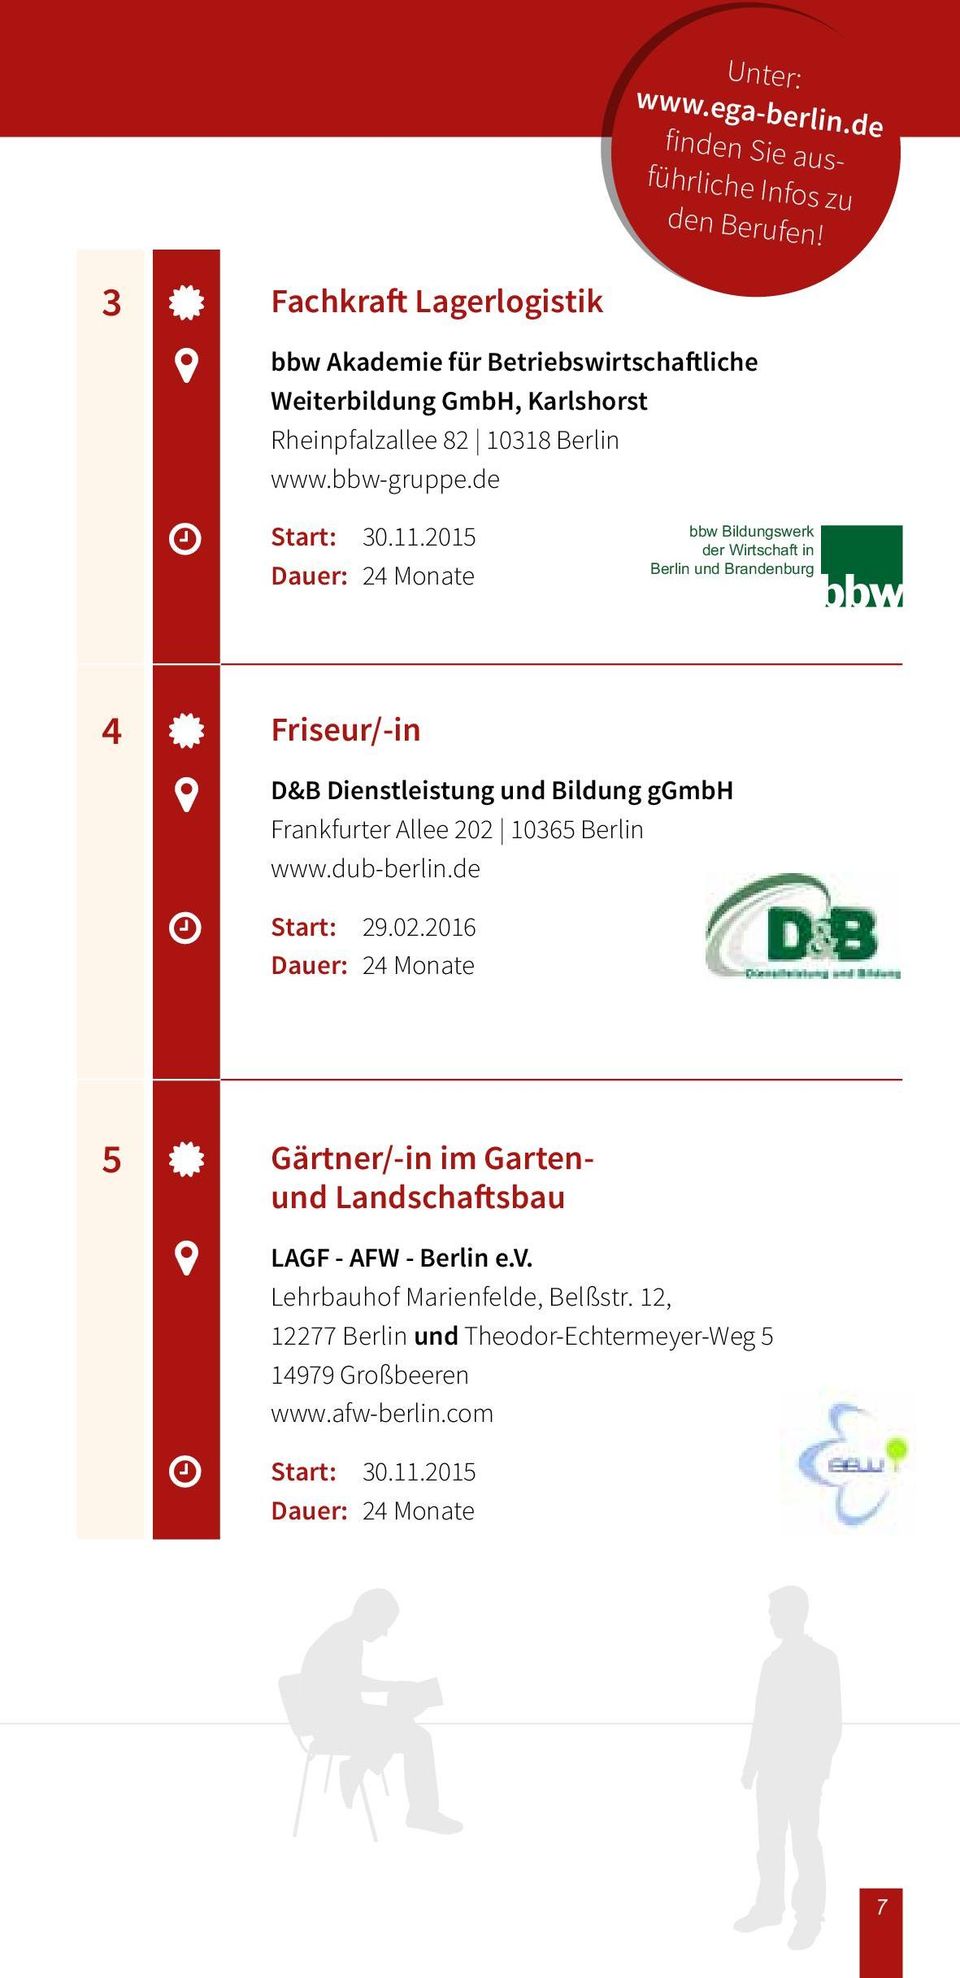 de bbw Bildungswerk der Wirtschaft in Berlin und Brandenburg 4 Friseur/-in D&B Dienstleistung und Bildung ggmbh Frankfurter Allee 202 10365